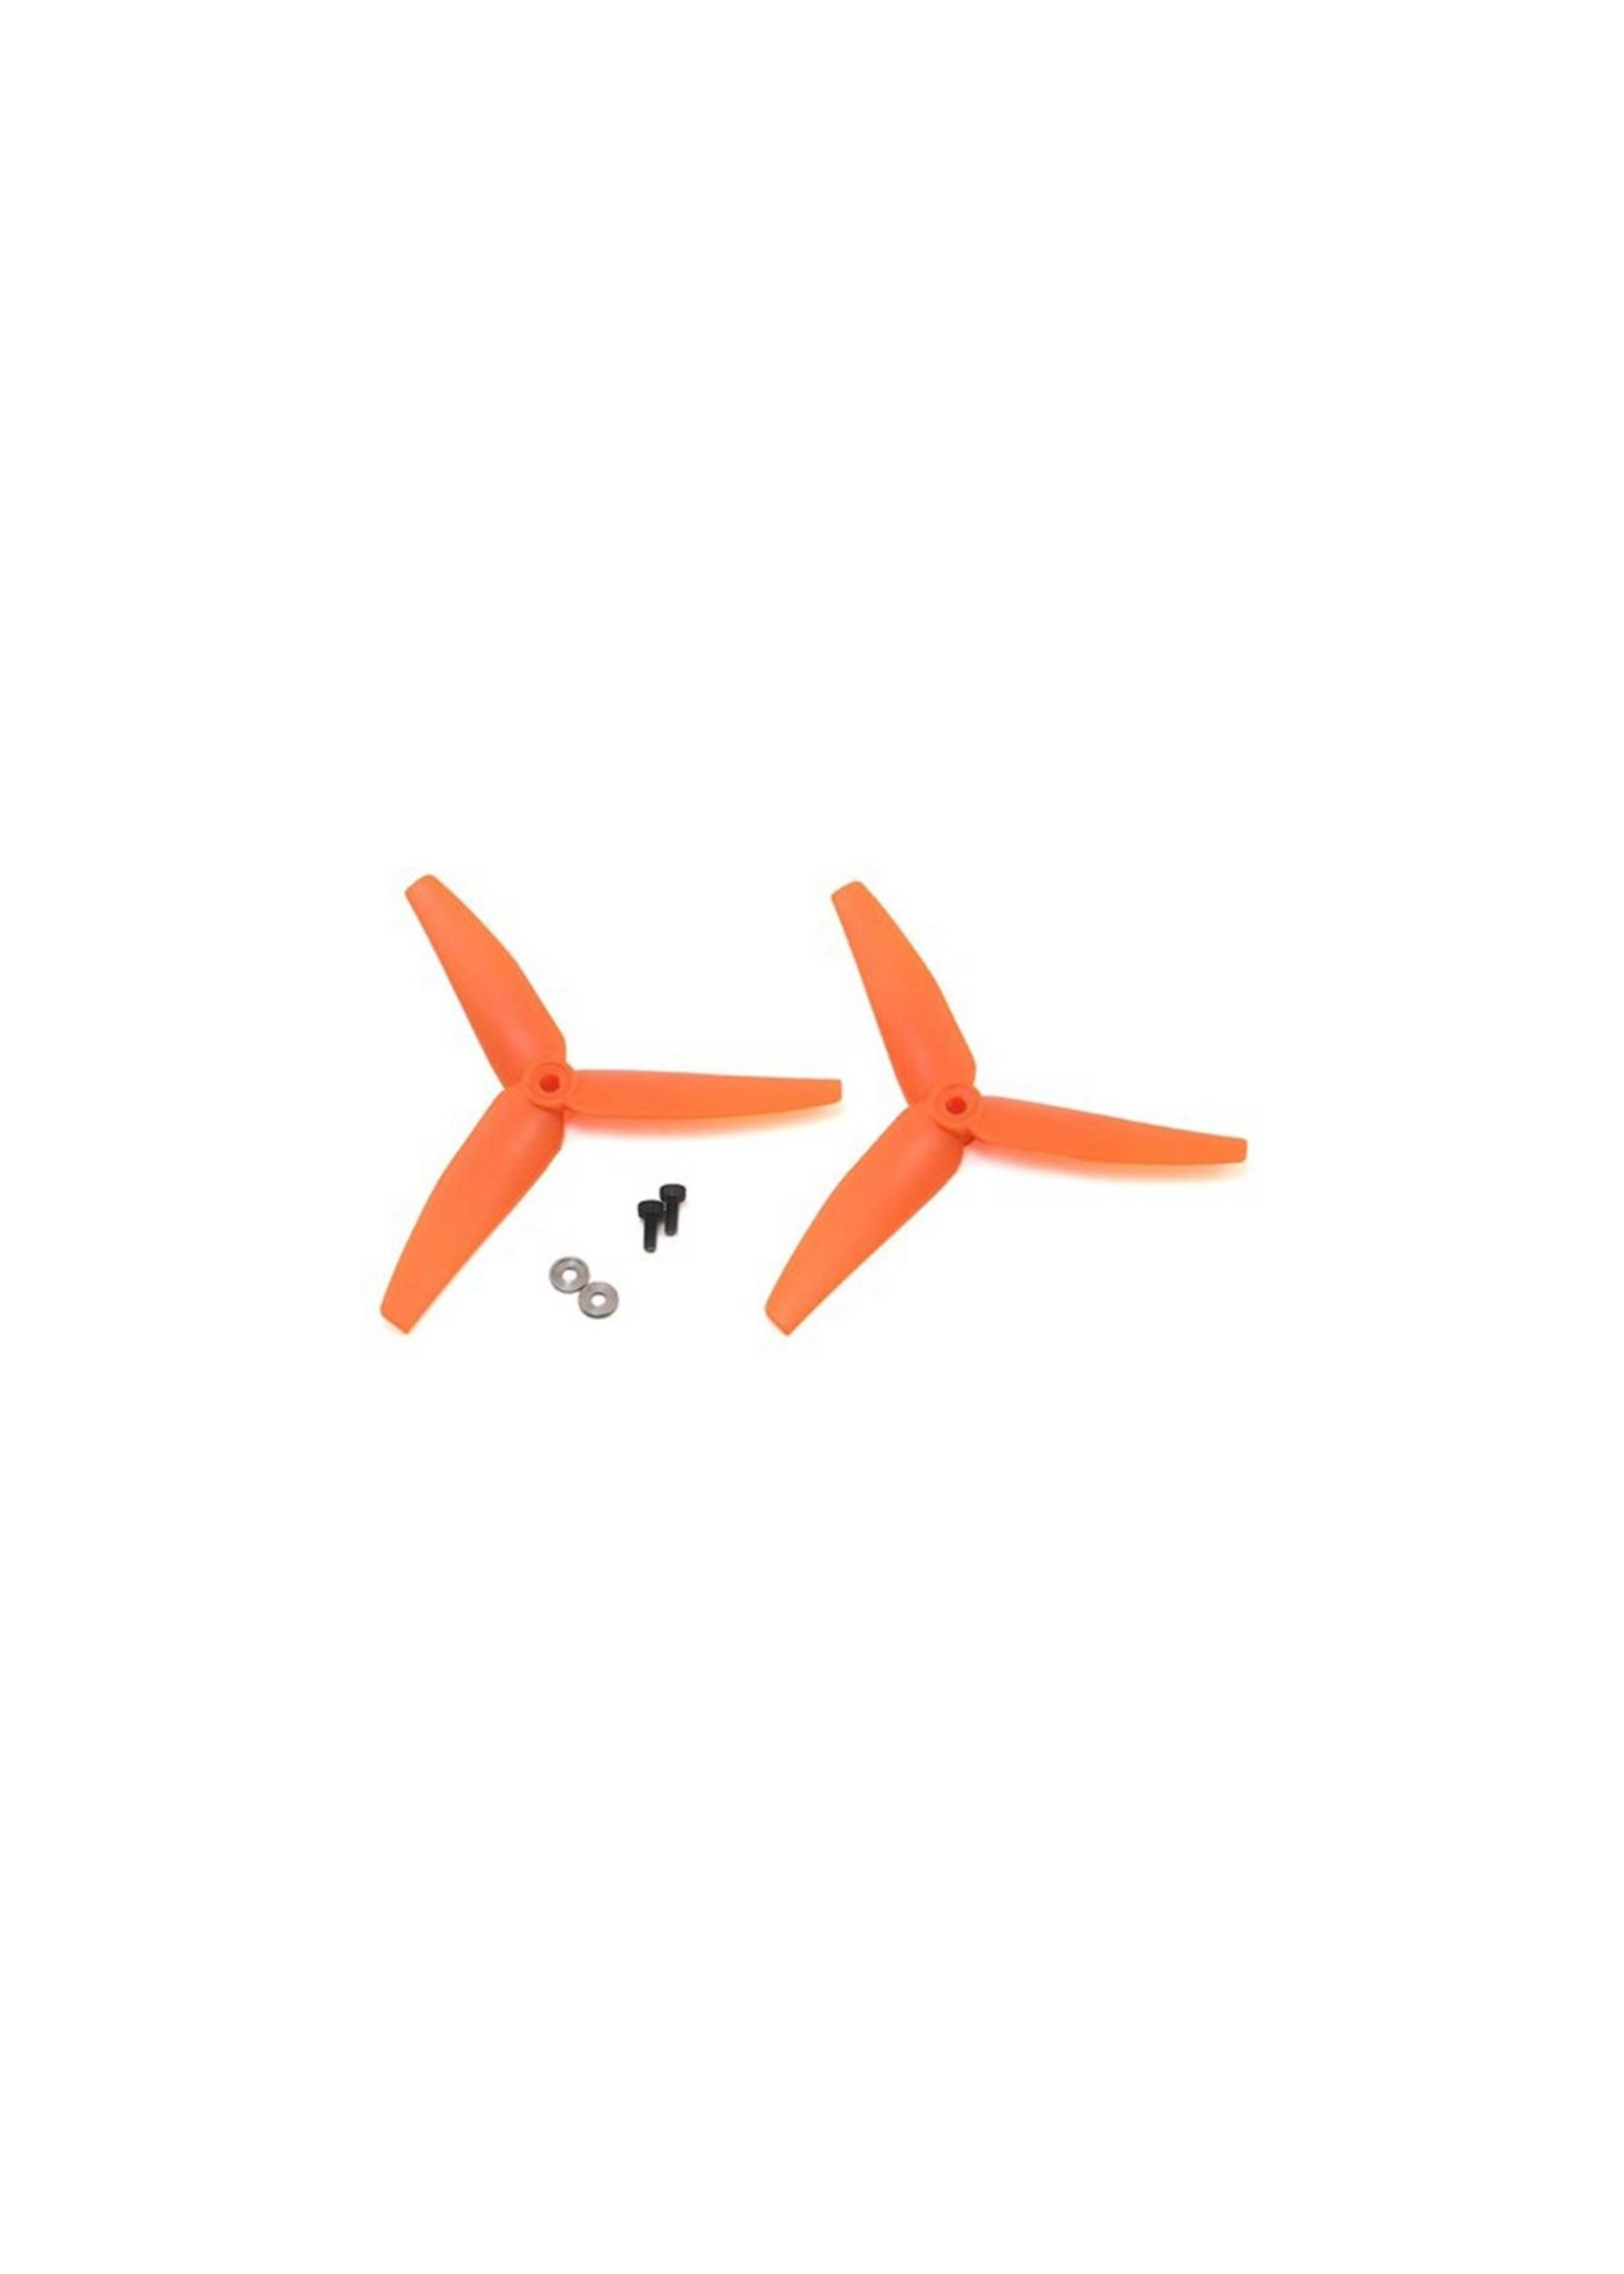 Blade 1403 - Tail Rotor, Orange (2): 230 S